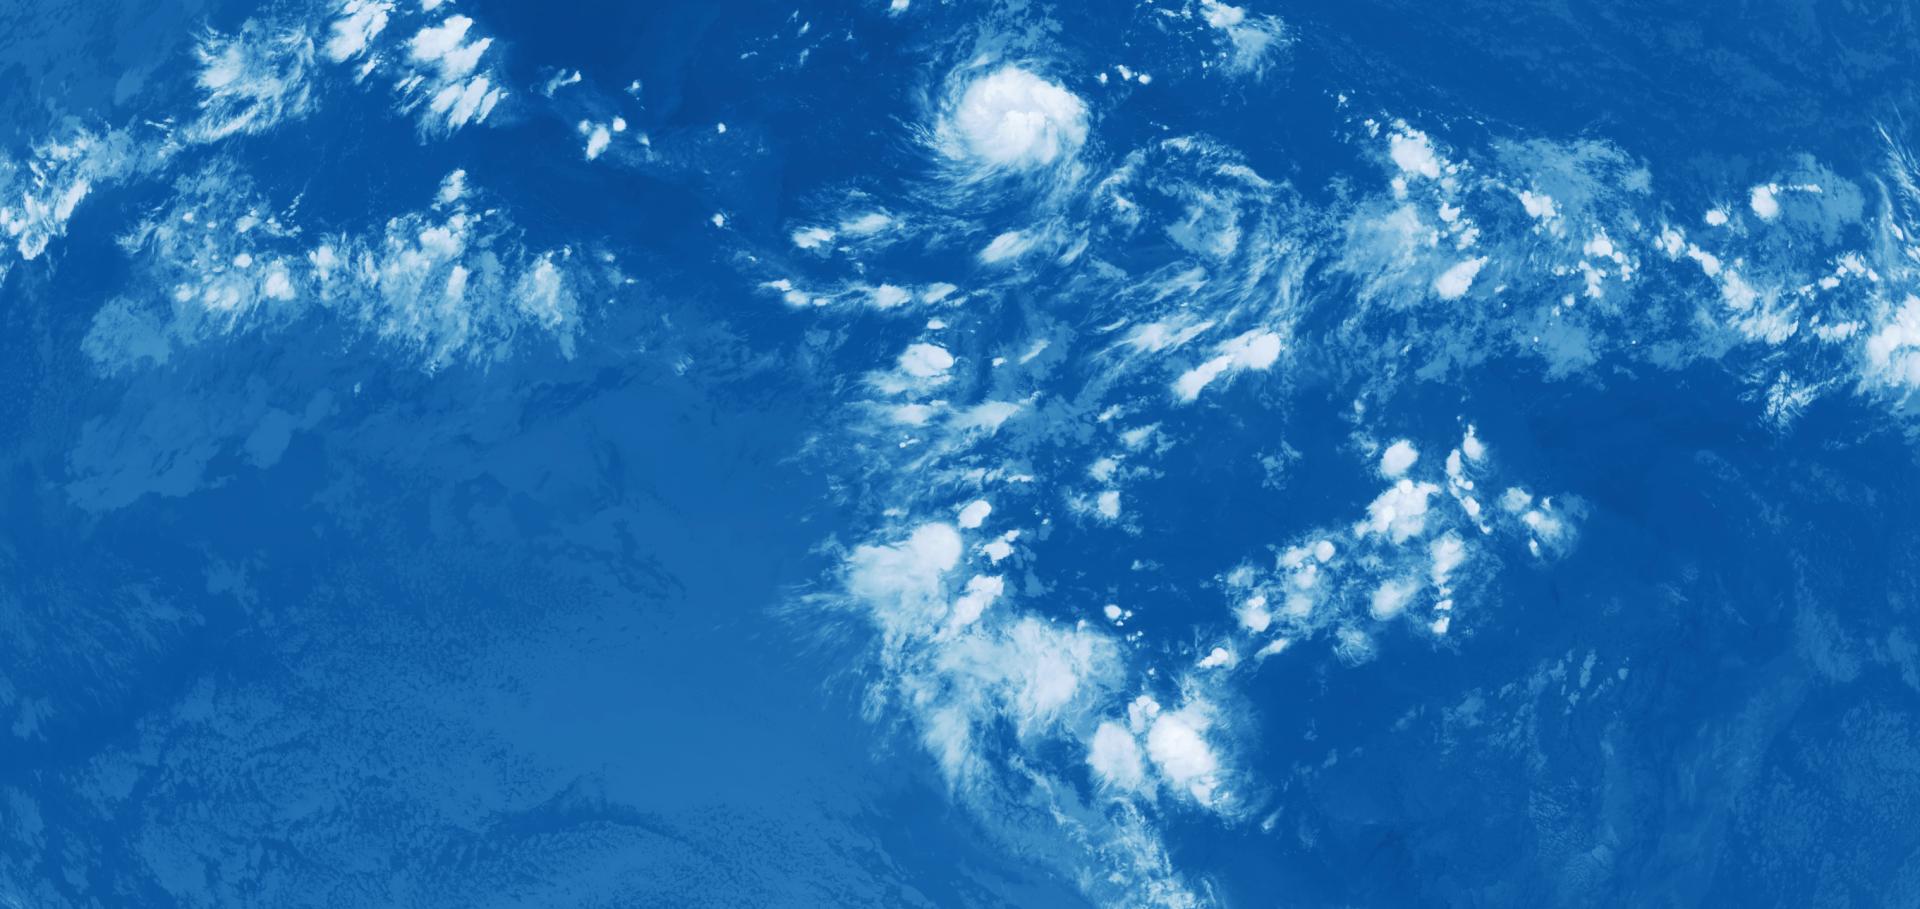 GOES-16 satellite image